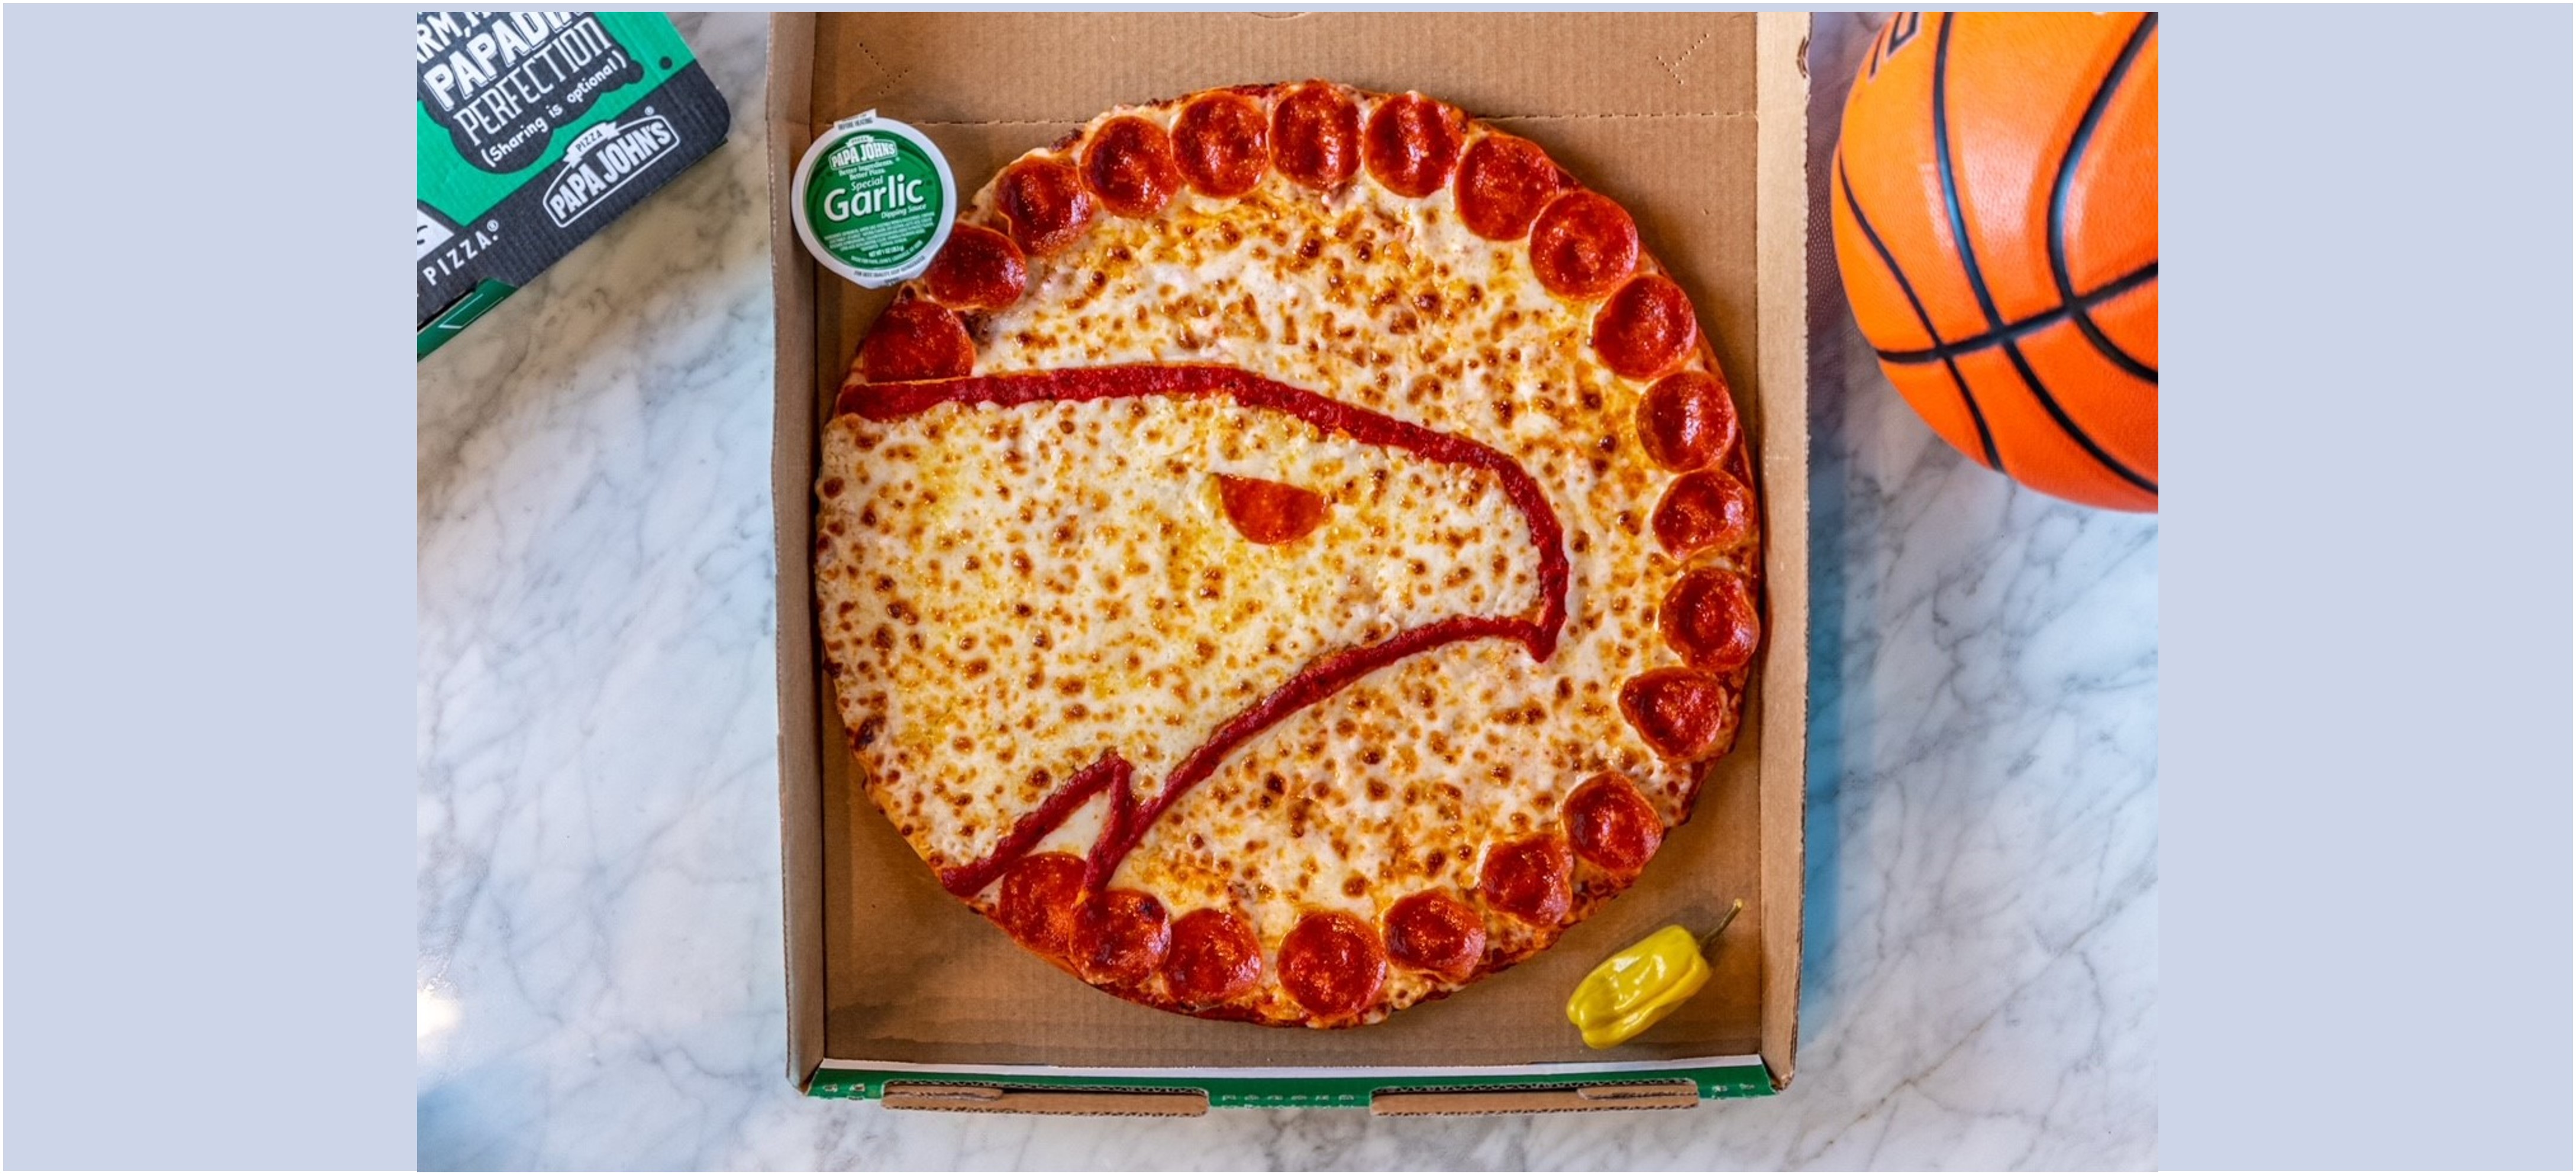 Hawks logo on Papa Johns pizza